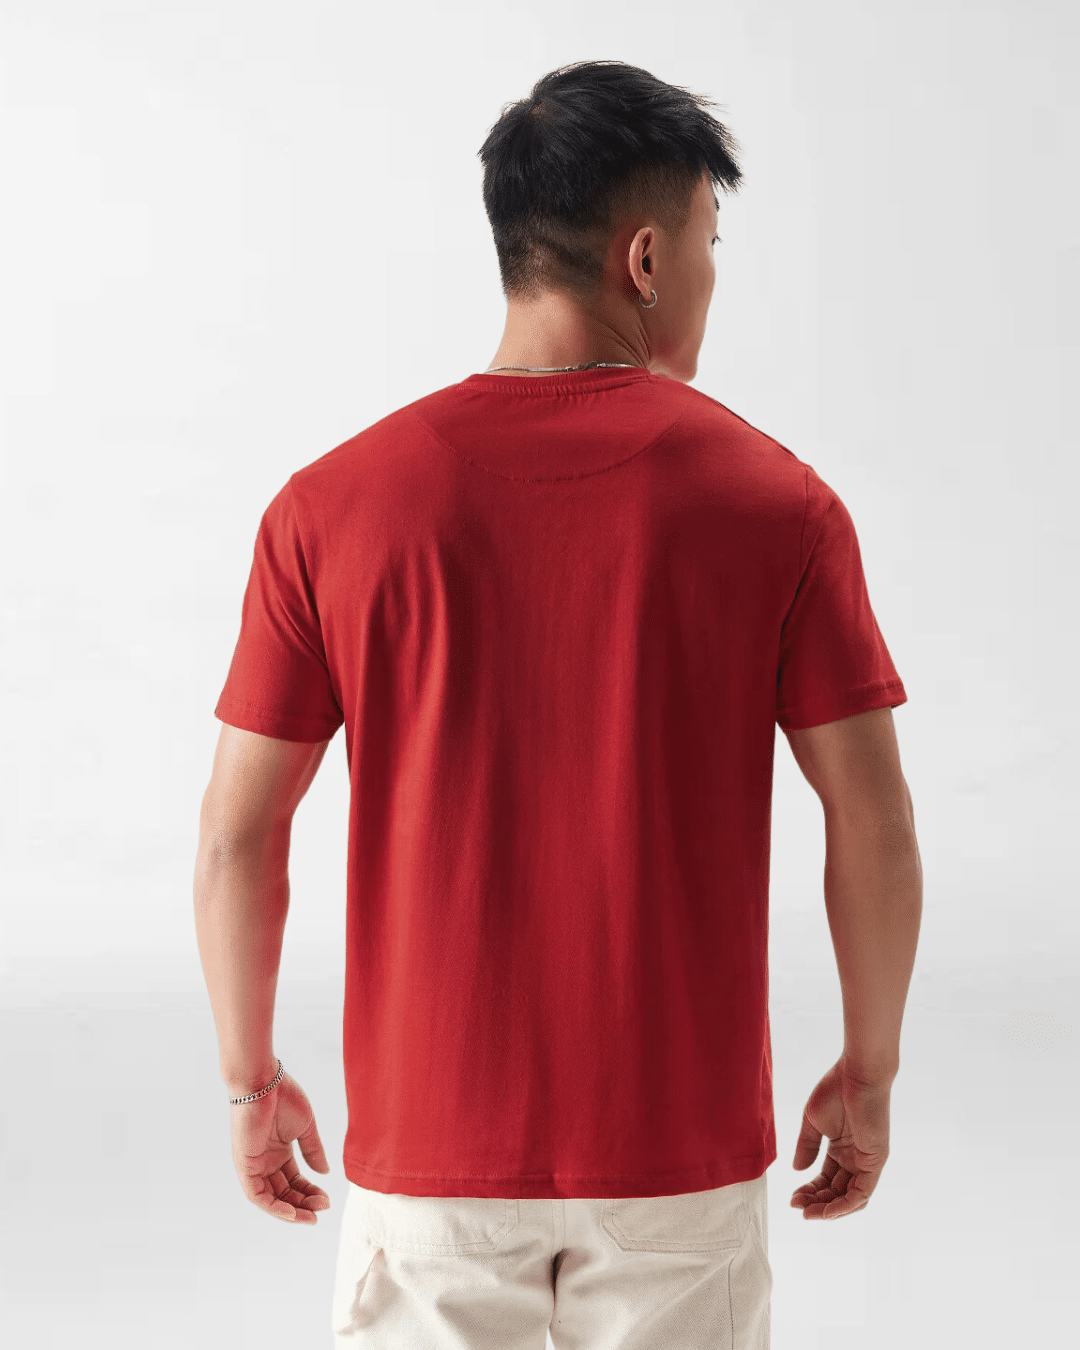 red tshirt, round neck tshirt, red round neck tshirt, regular fit tshirt